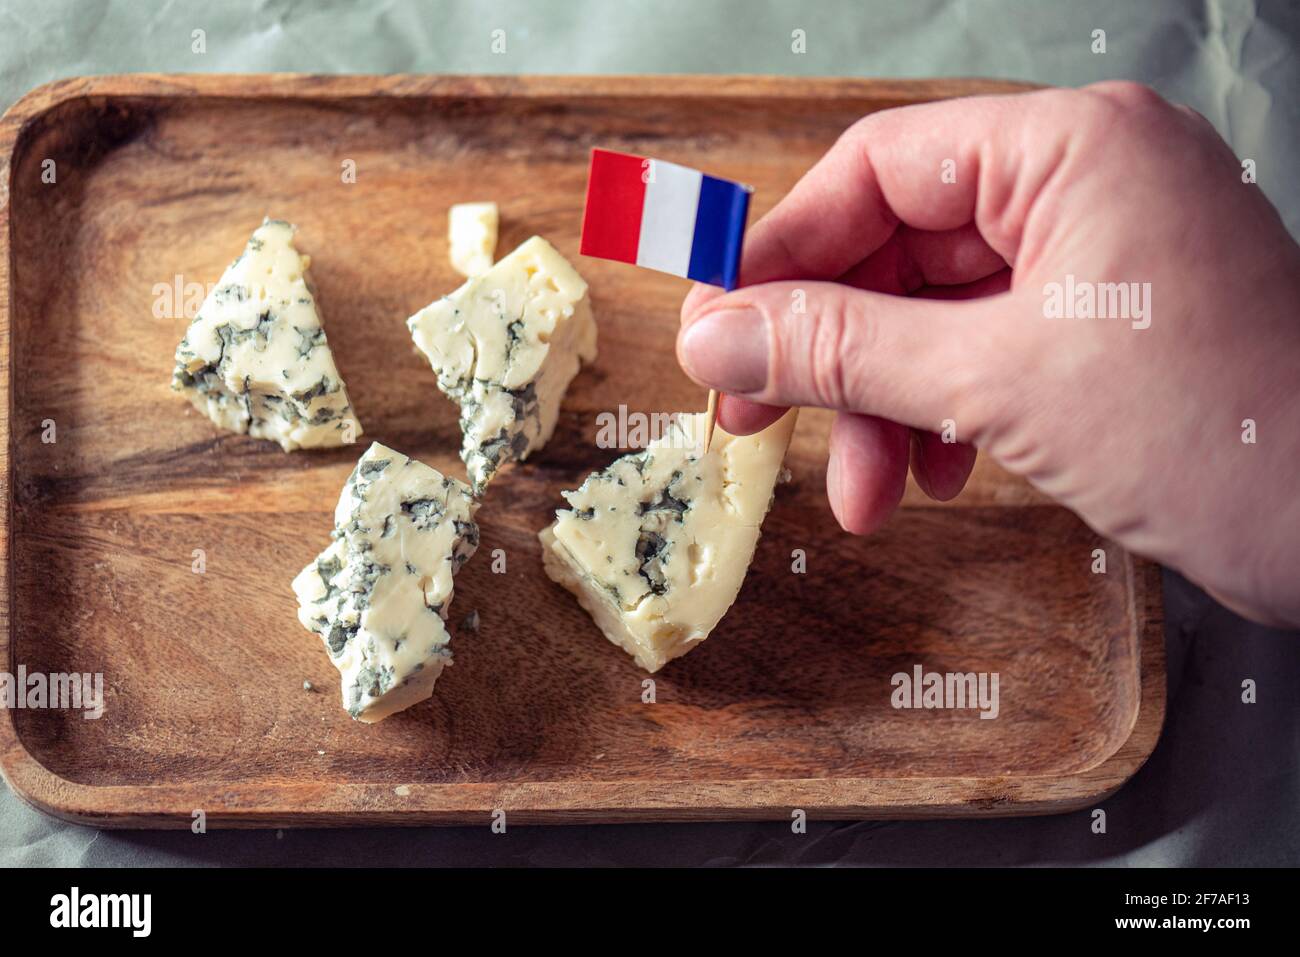 Un homme fermier mettant un petit drapeau français de papier sur le fromage bleu, la nourriture traditionnelle française Banque D'Images